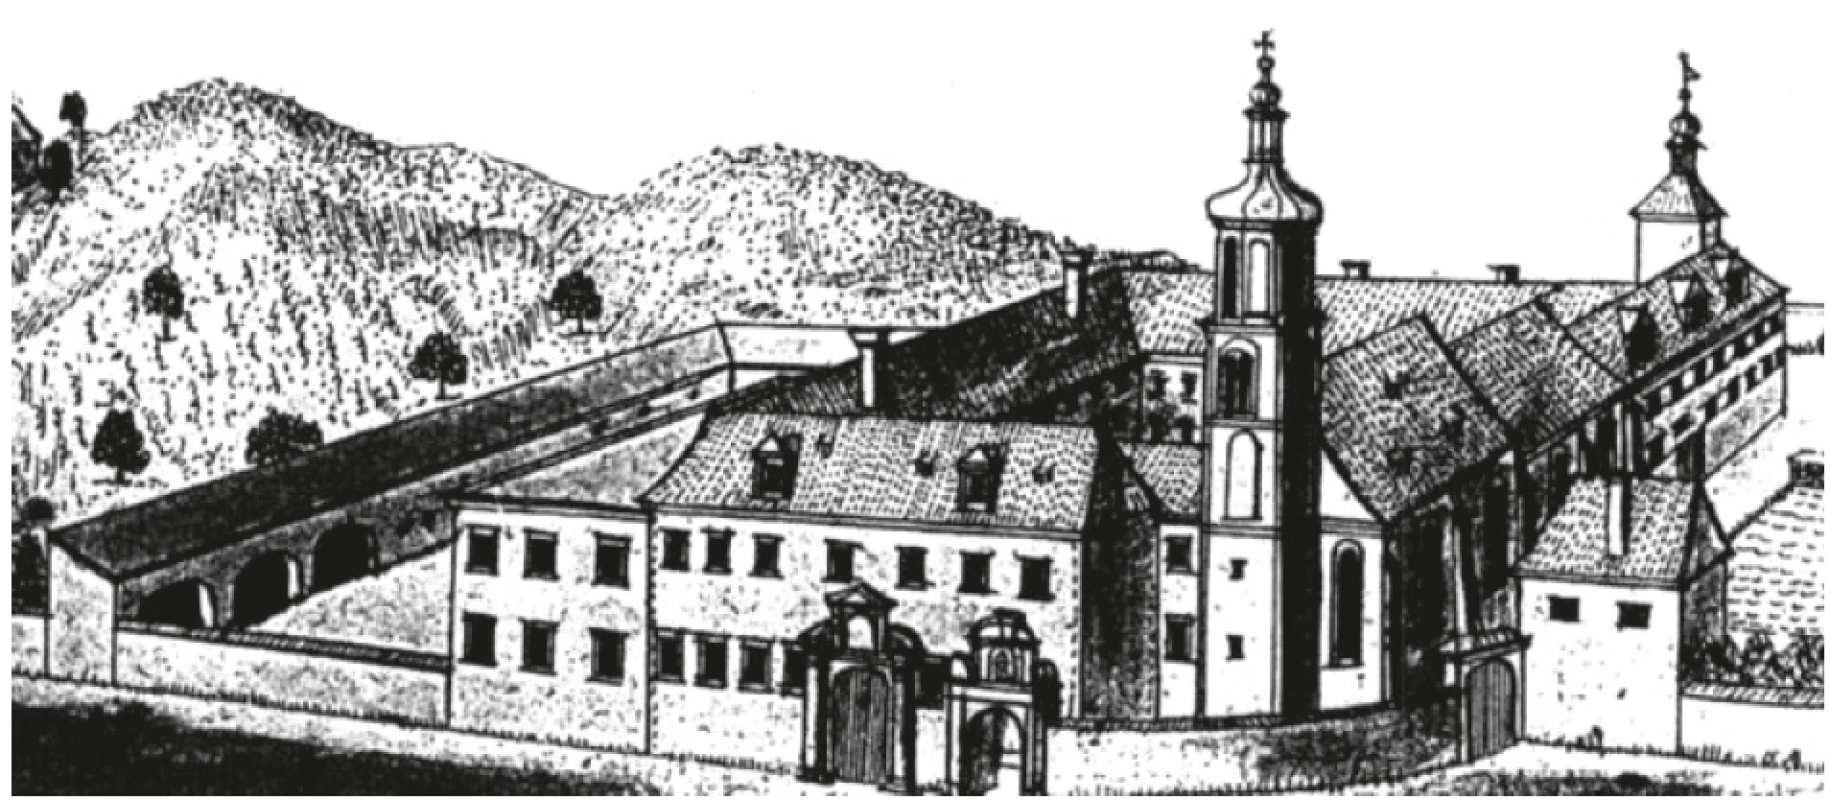 Areál kláštera servitů Na trávníčku po barokních úpravách v polovině 18. století (perokresba Friedricha Bernharda Wernera)